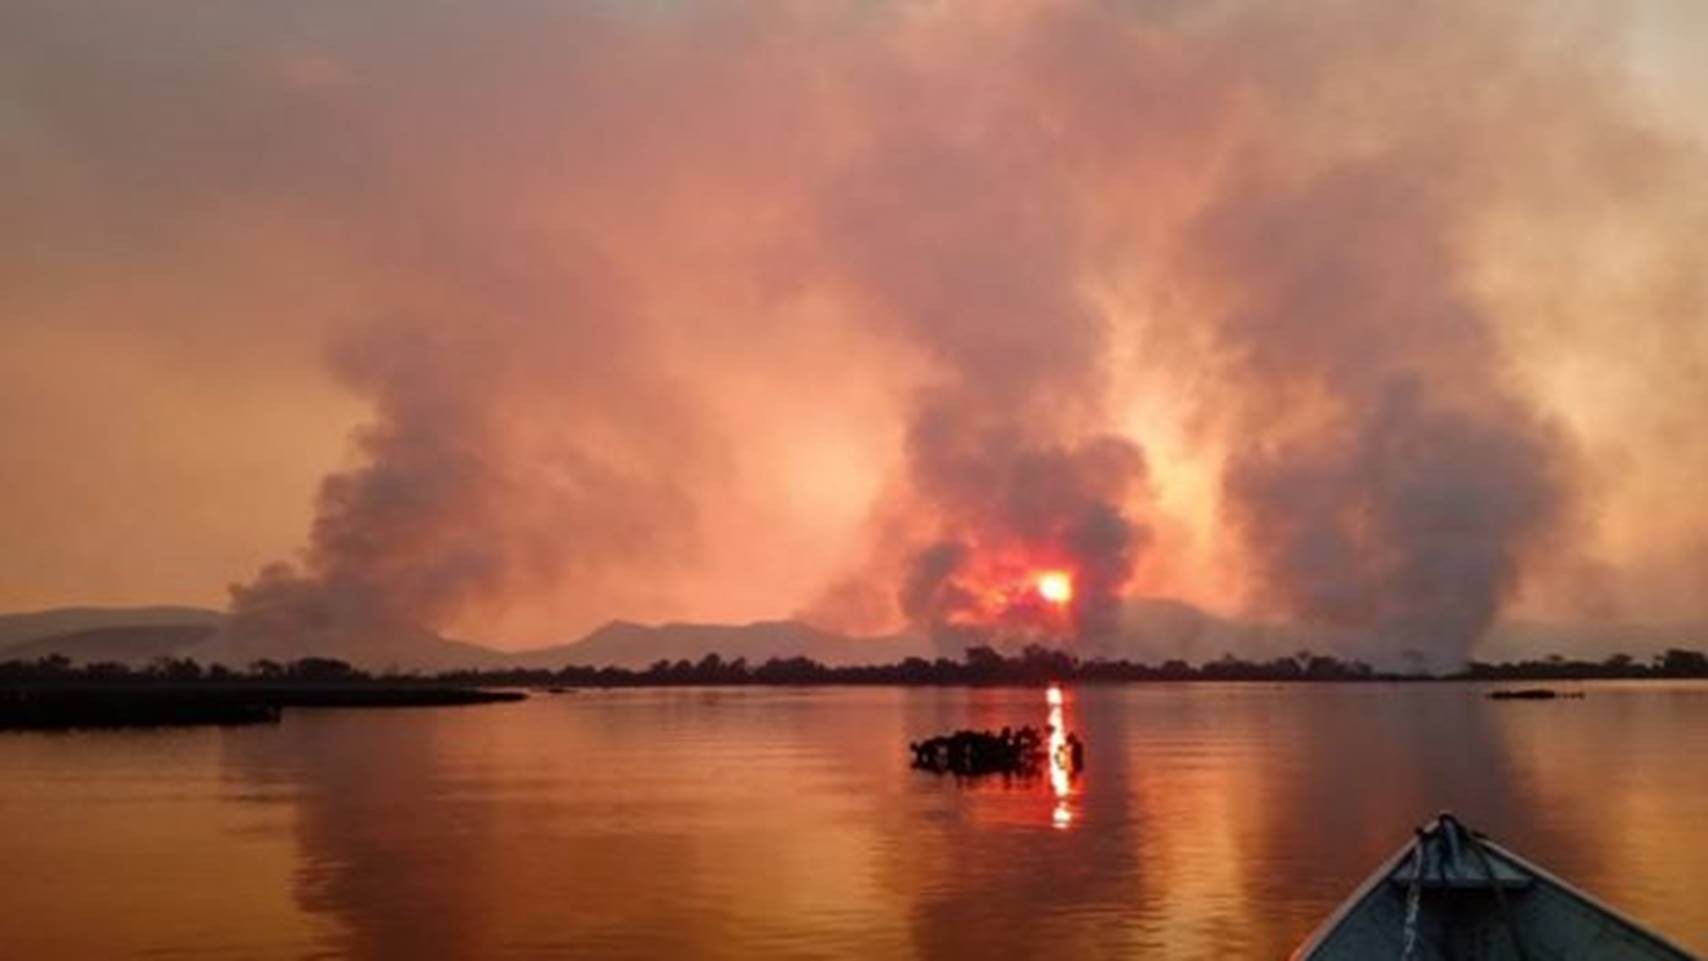 Risco de incêndios: União declara estado de emergência ambiental em MS e outros estados brasileiros